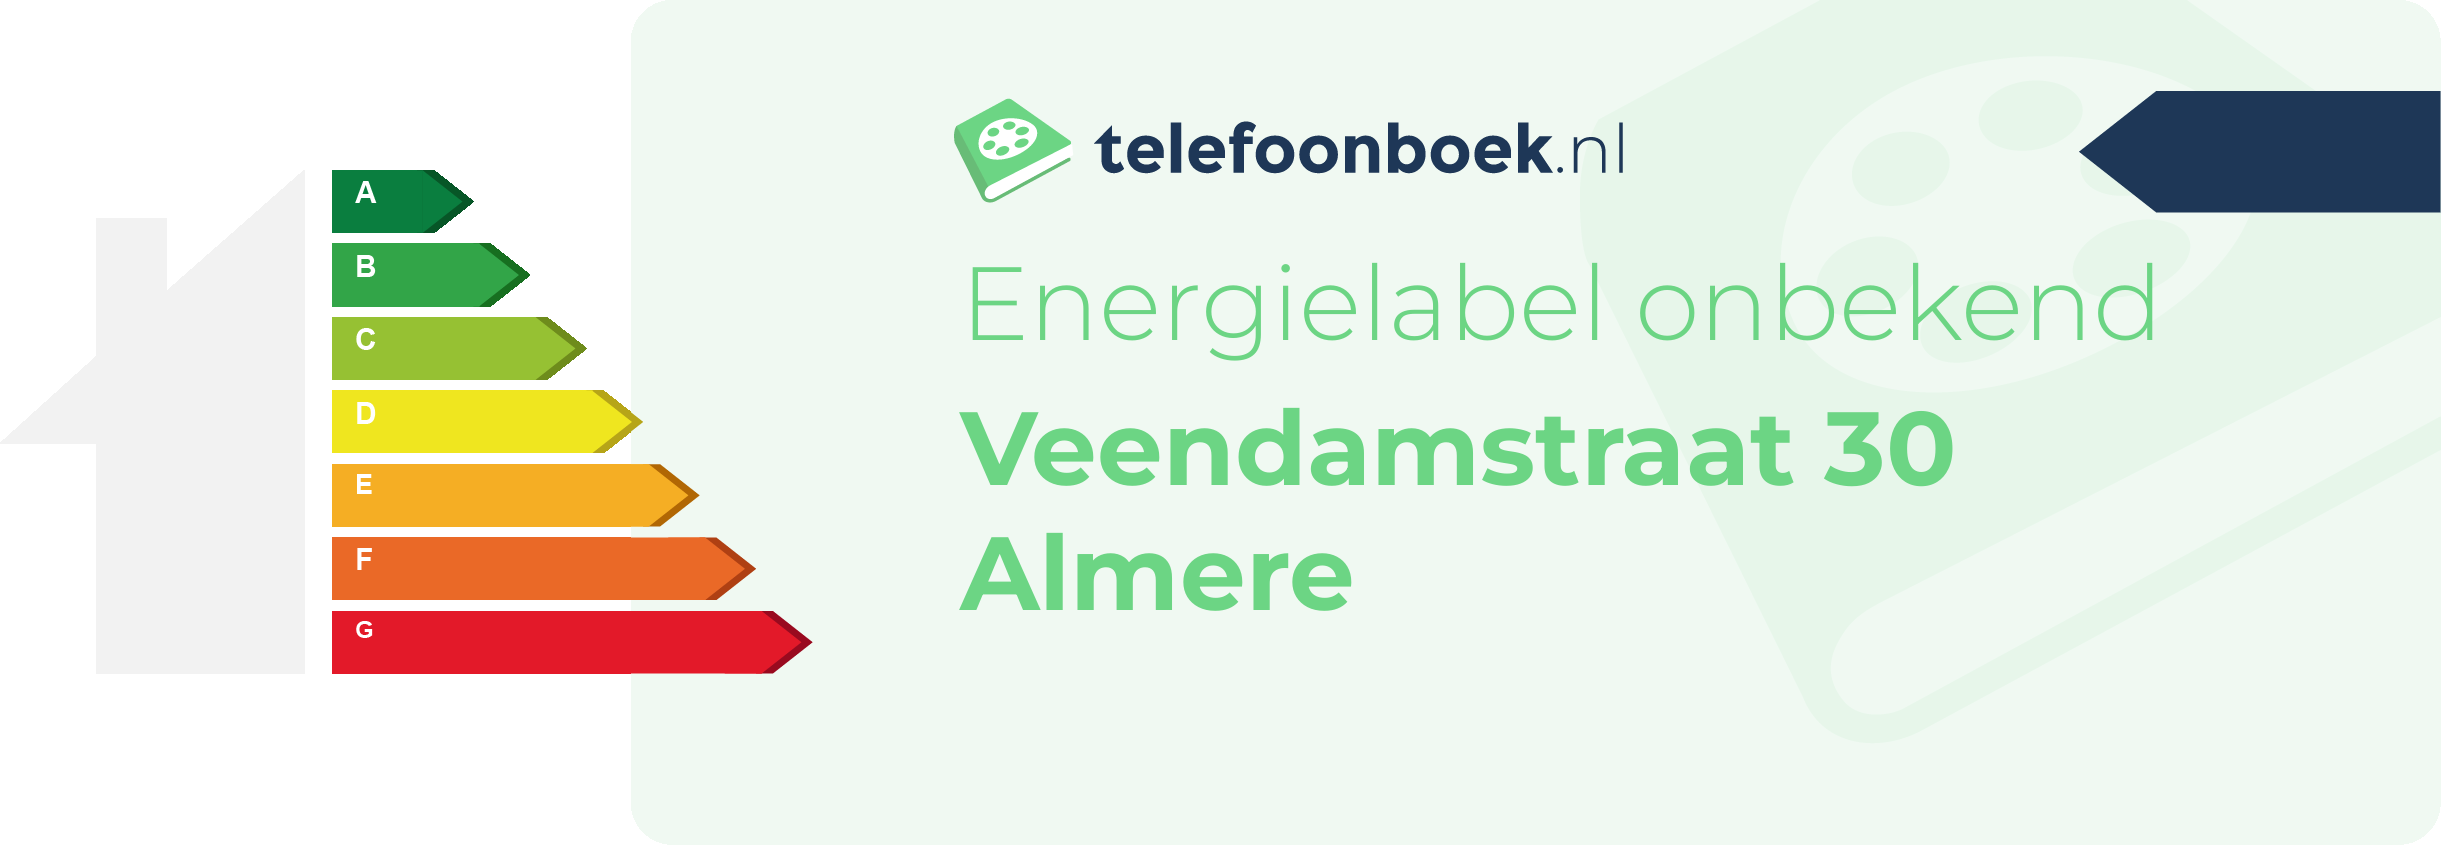 Energielabel Veendamstraat 30 Almere